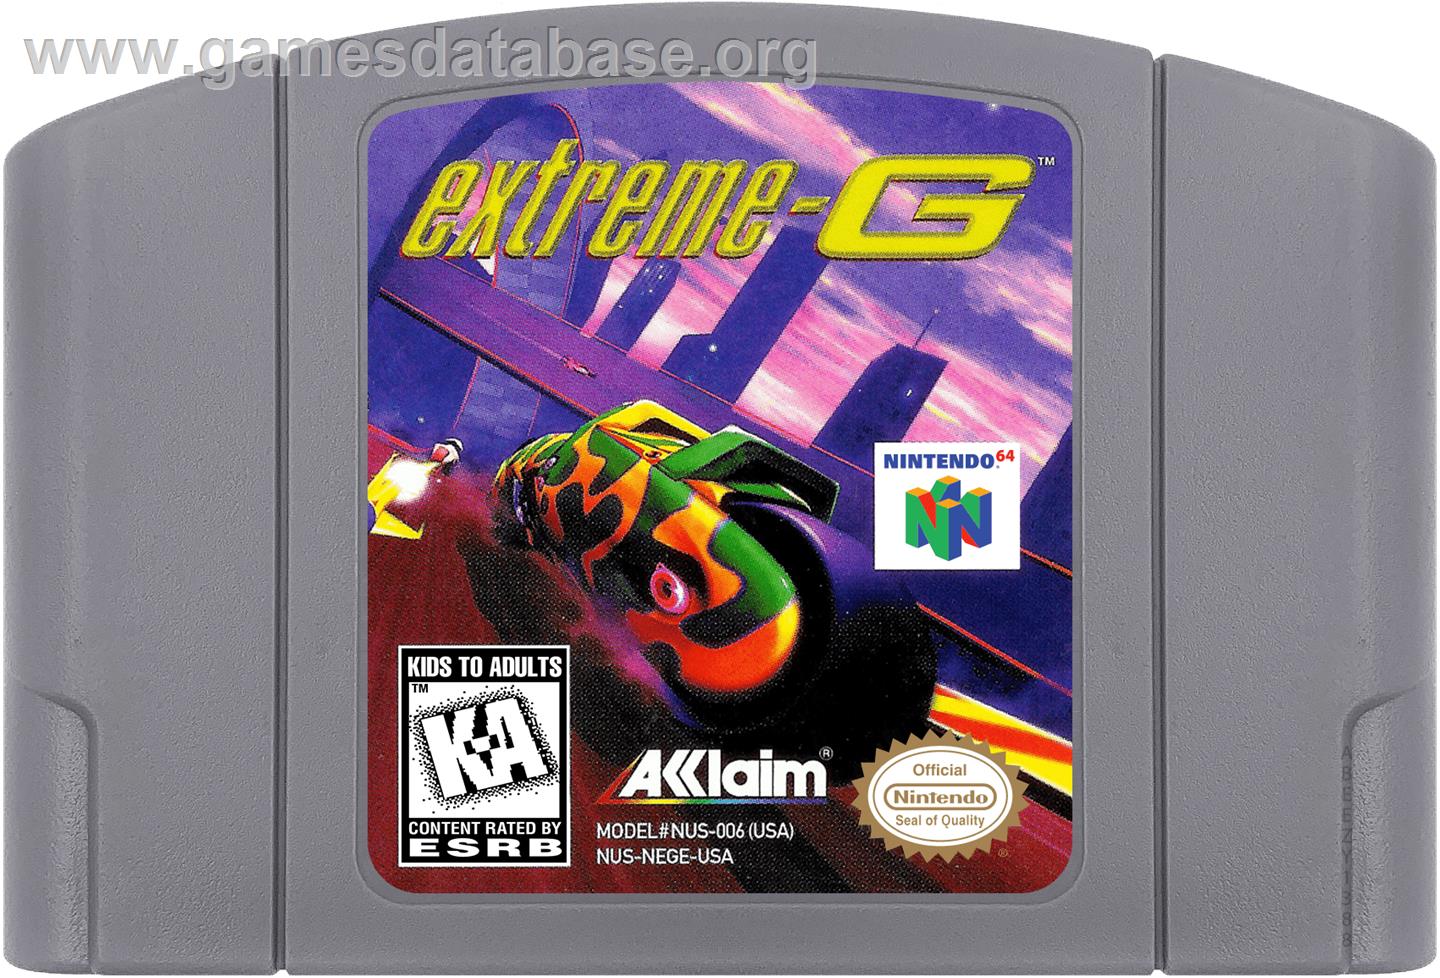 Extreme G - Nintendo N64 - Artwork - Cartridge